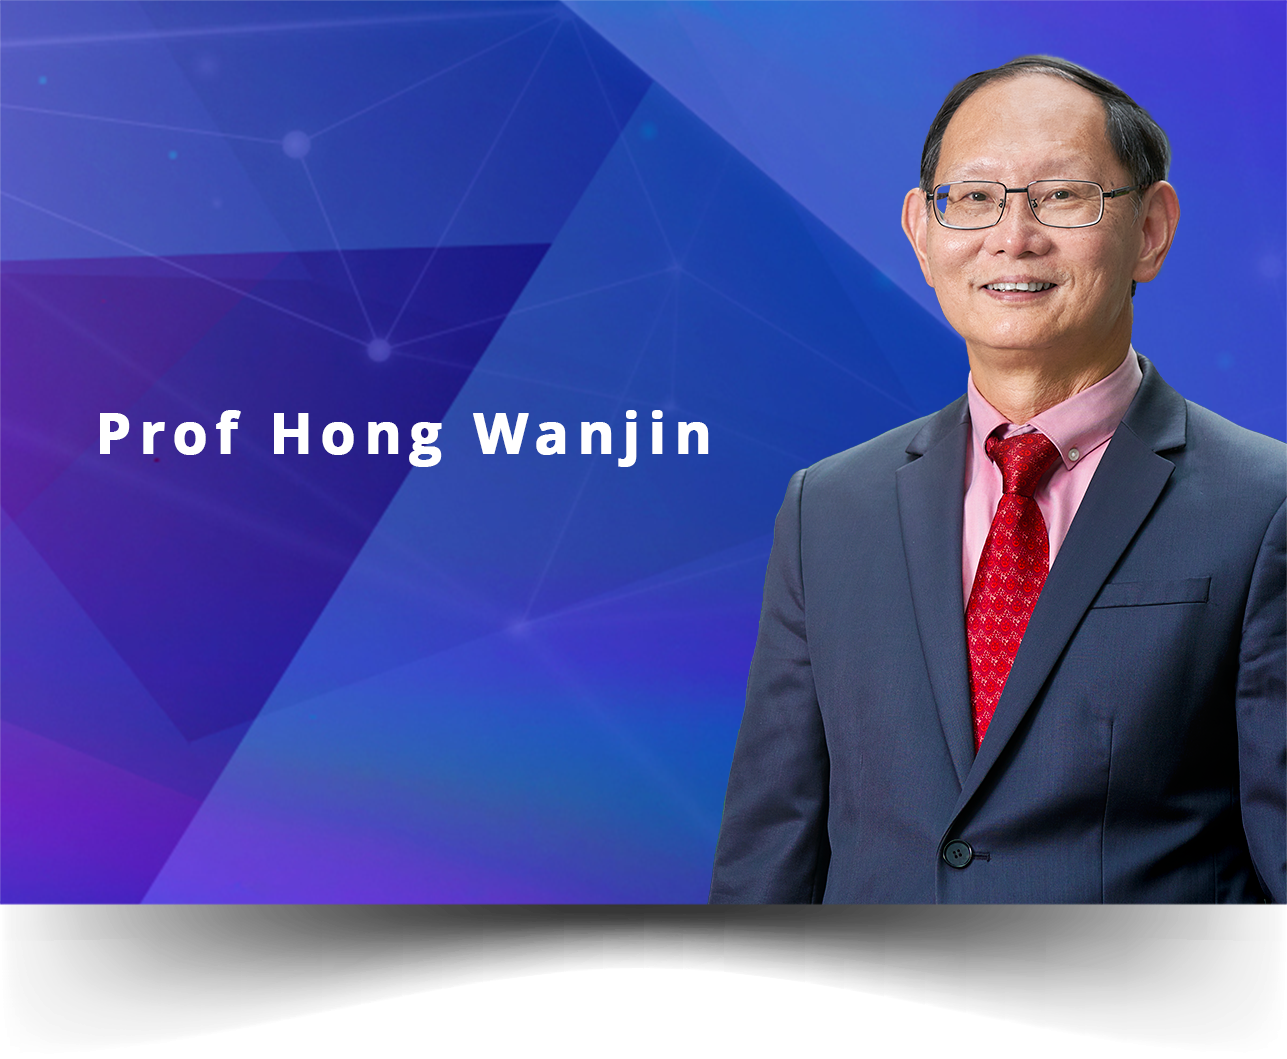 PROFESSOR HONG WANJIN